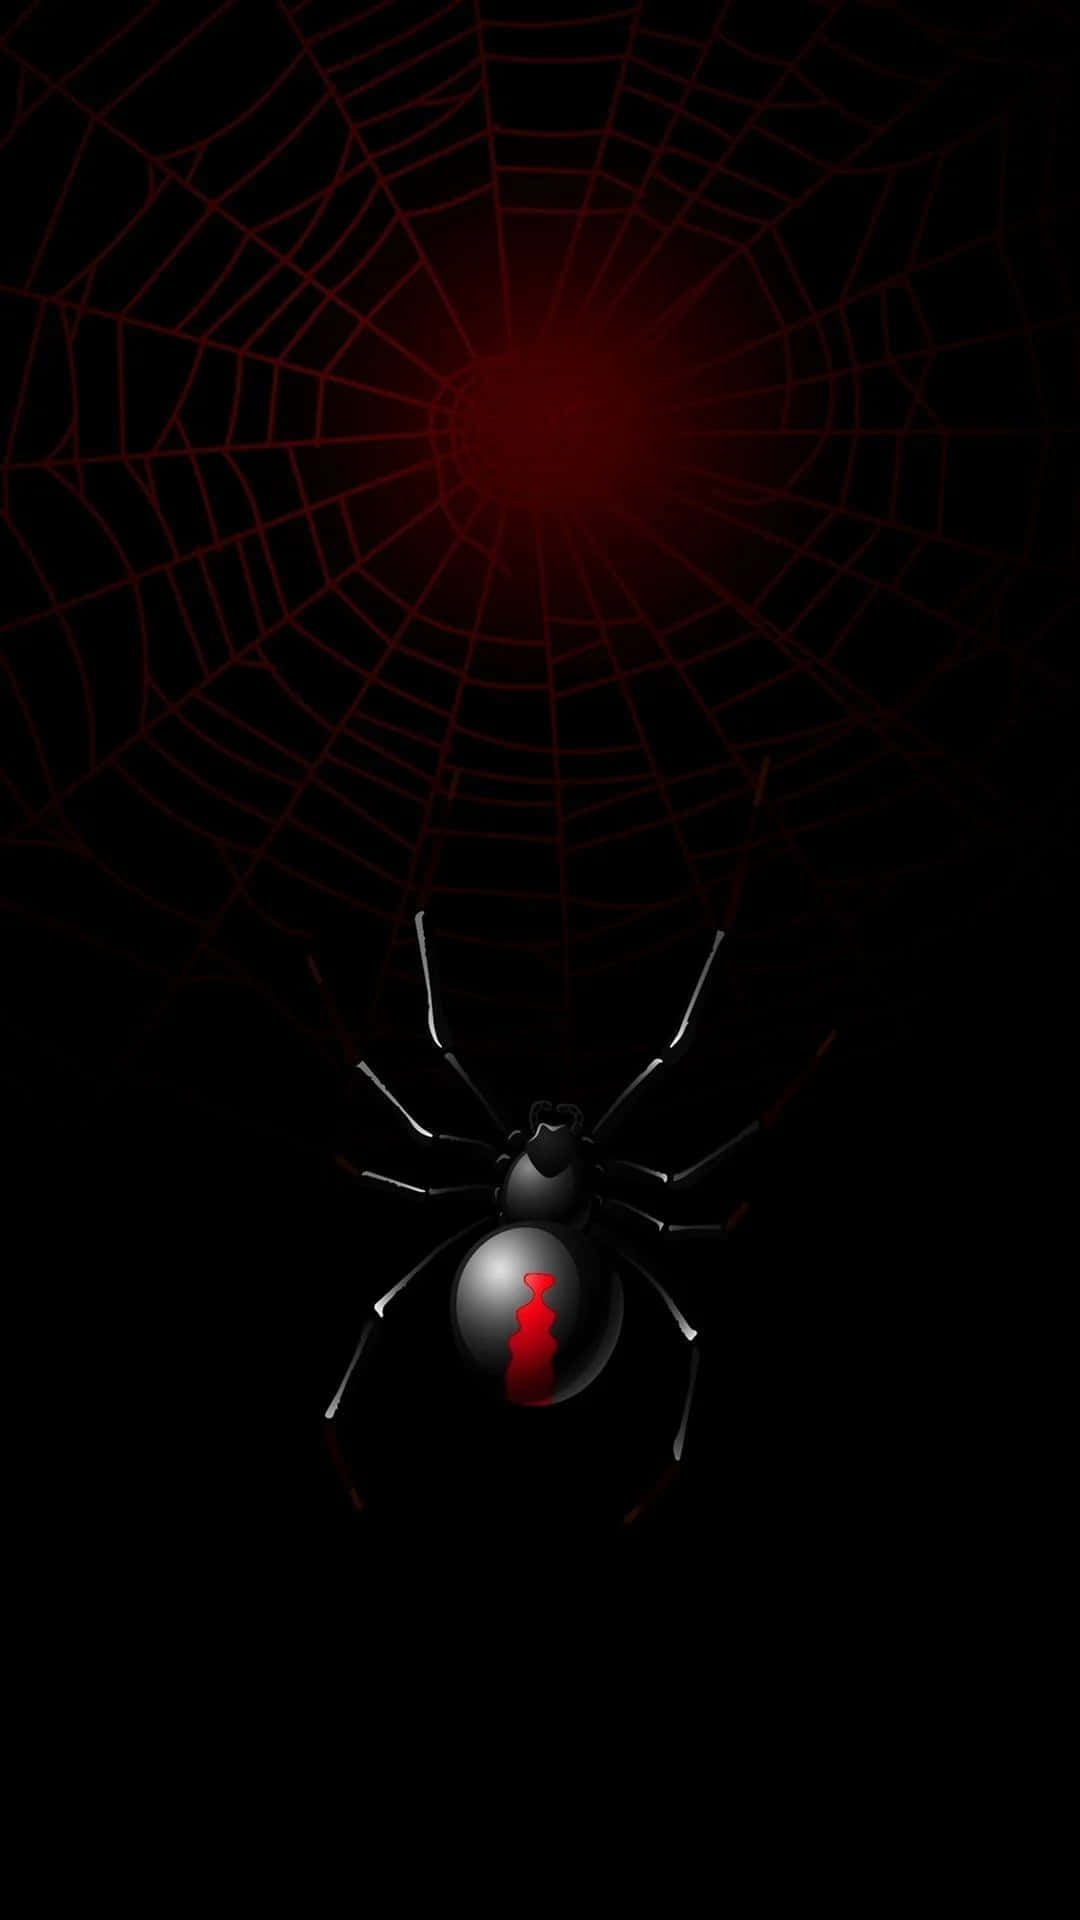 Eineschwarze Spinne In Einem Netz Mit Rotem Licht